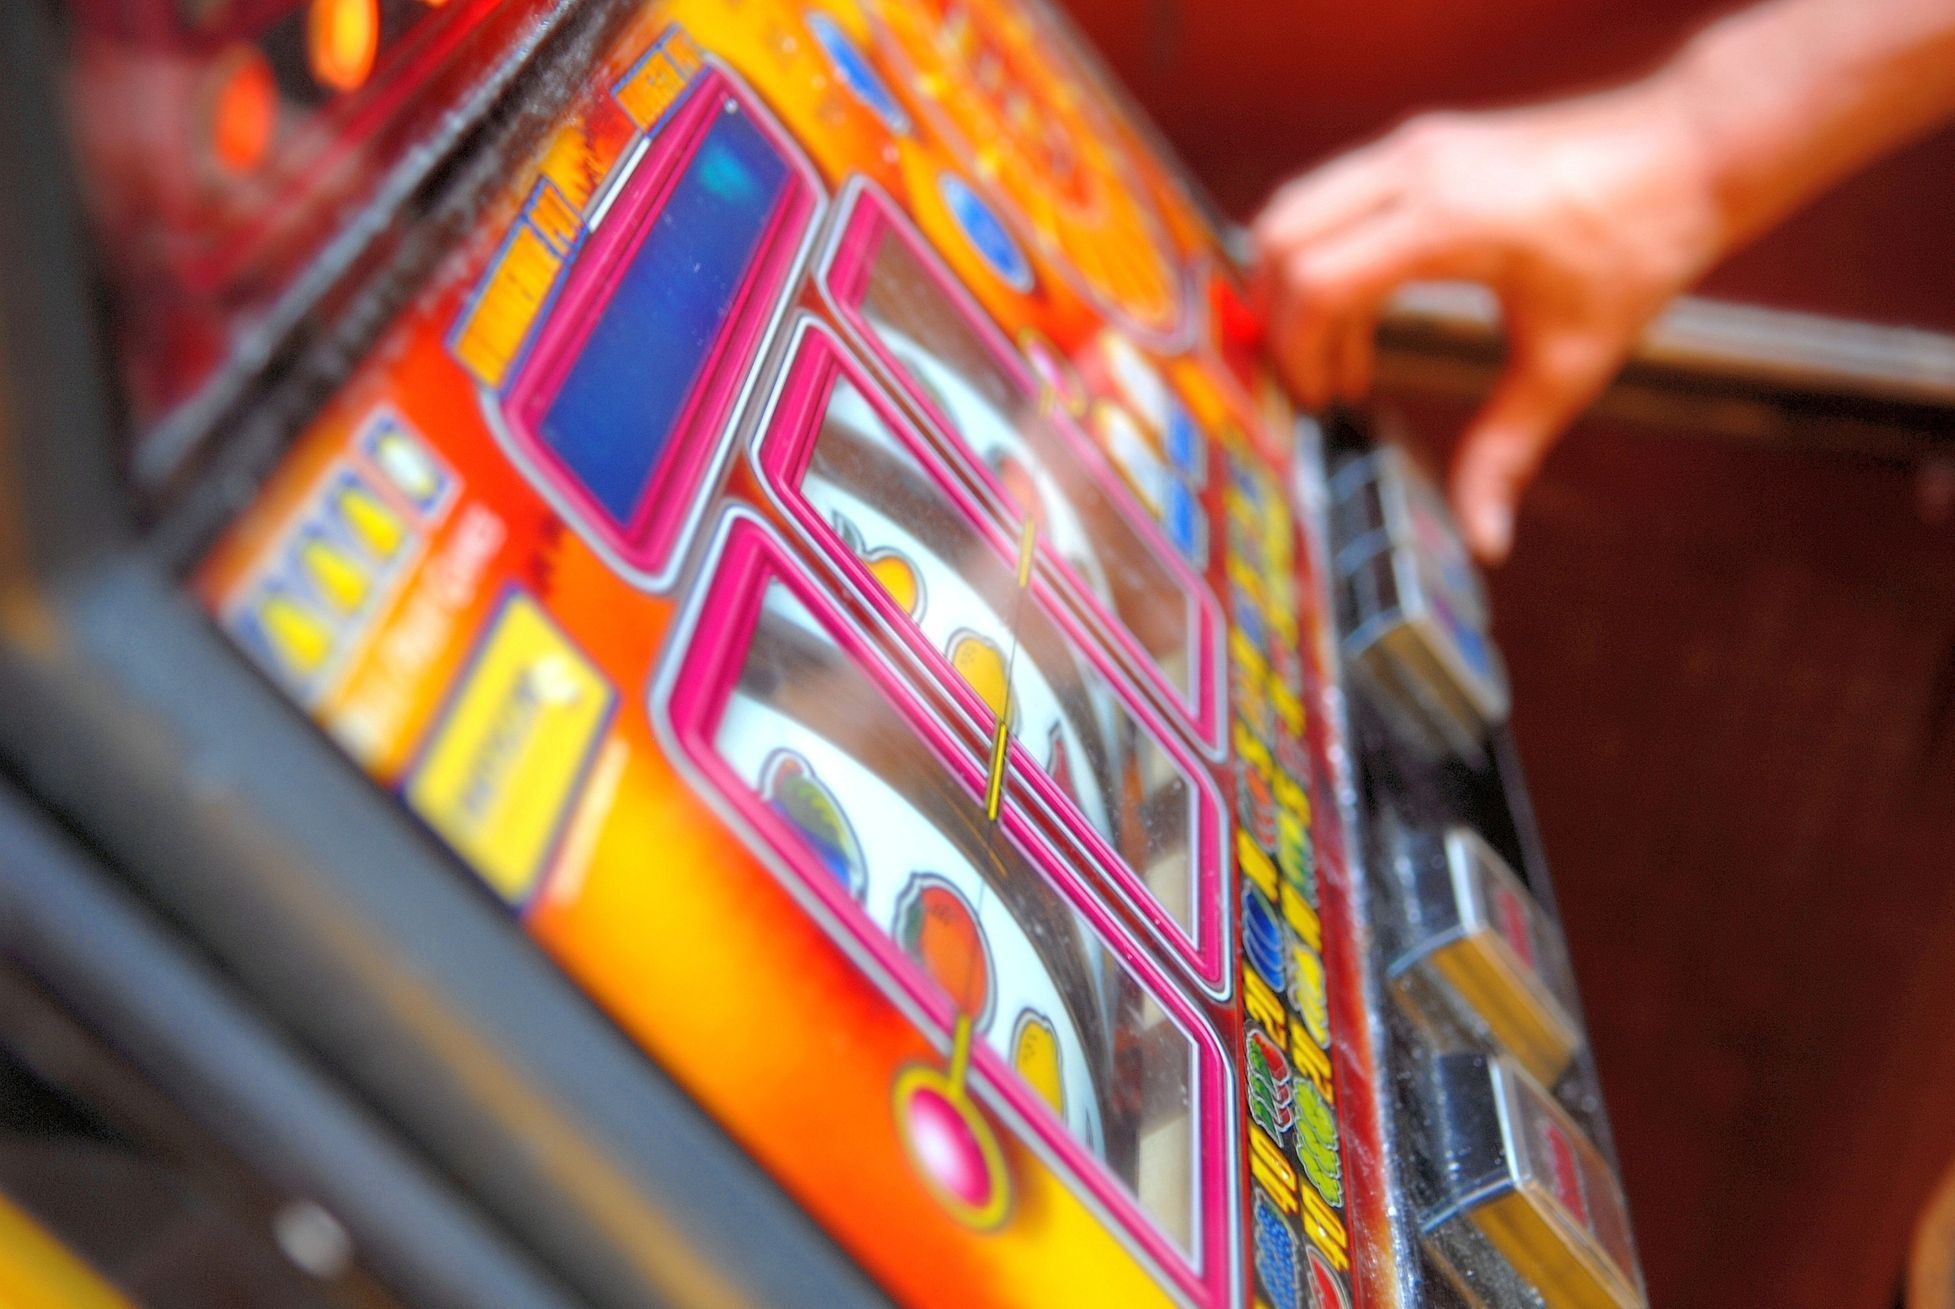 Herní automat, gamblerství